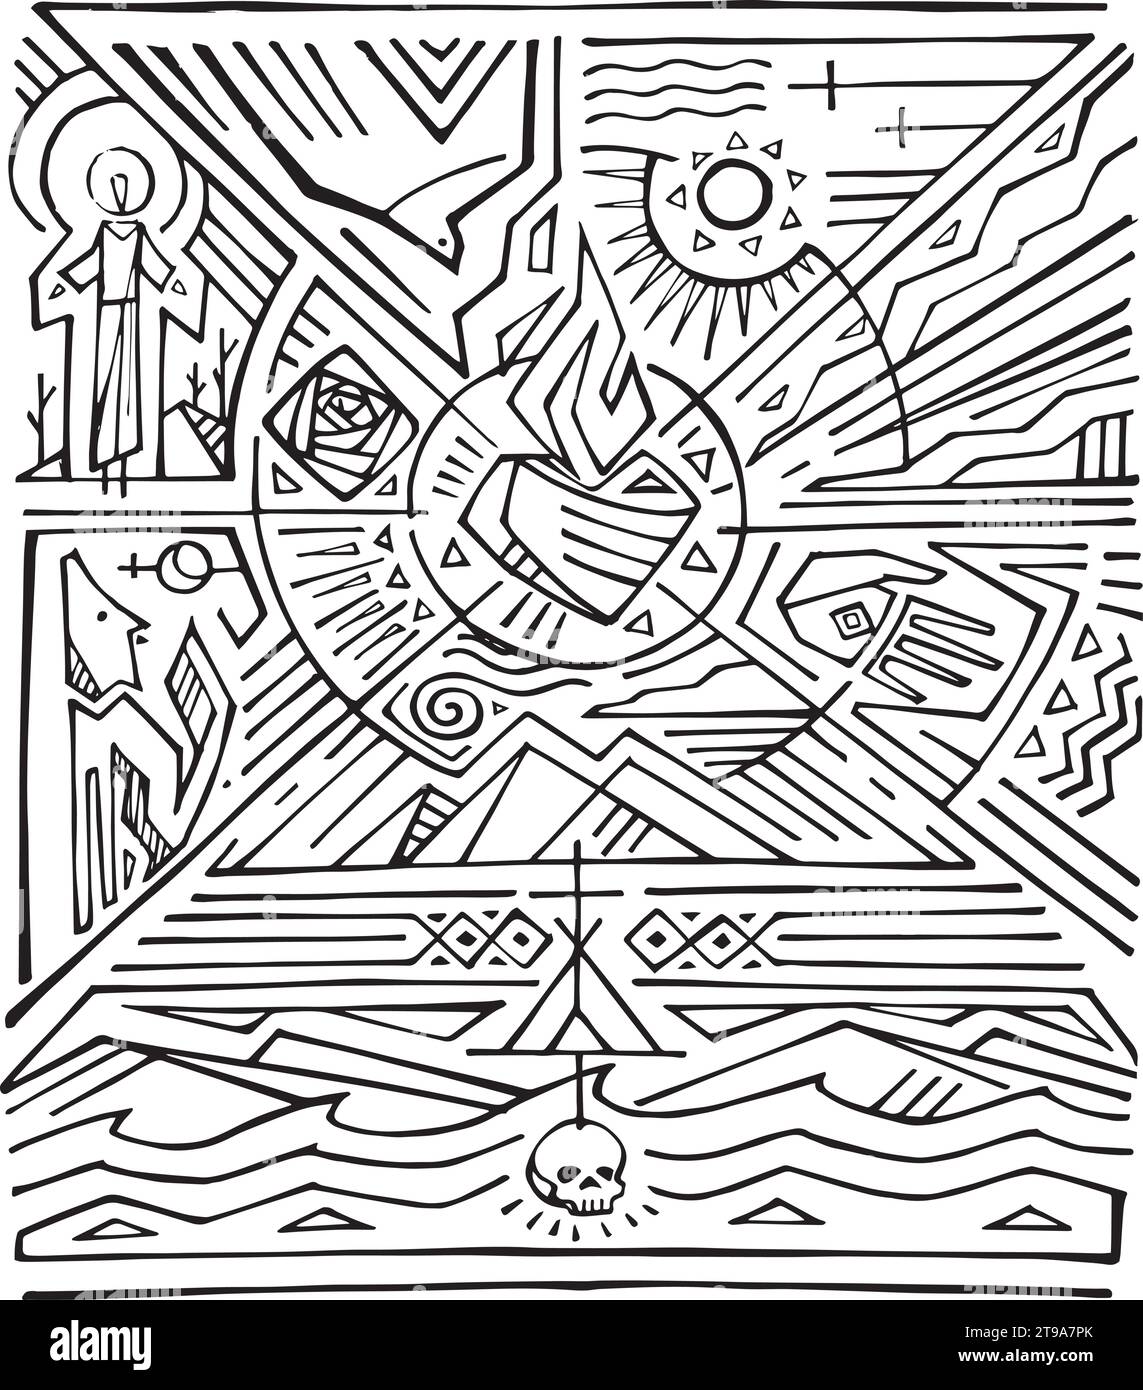 Illustrazione vettoriale disegnata a mano o disegno di San Francesco d'Assisi con natura e simboli religiosi Illustrazione Vettoriale